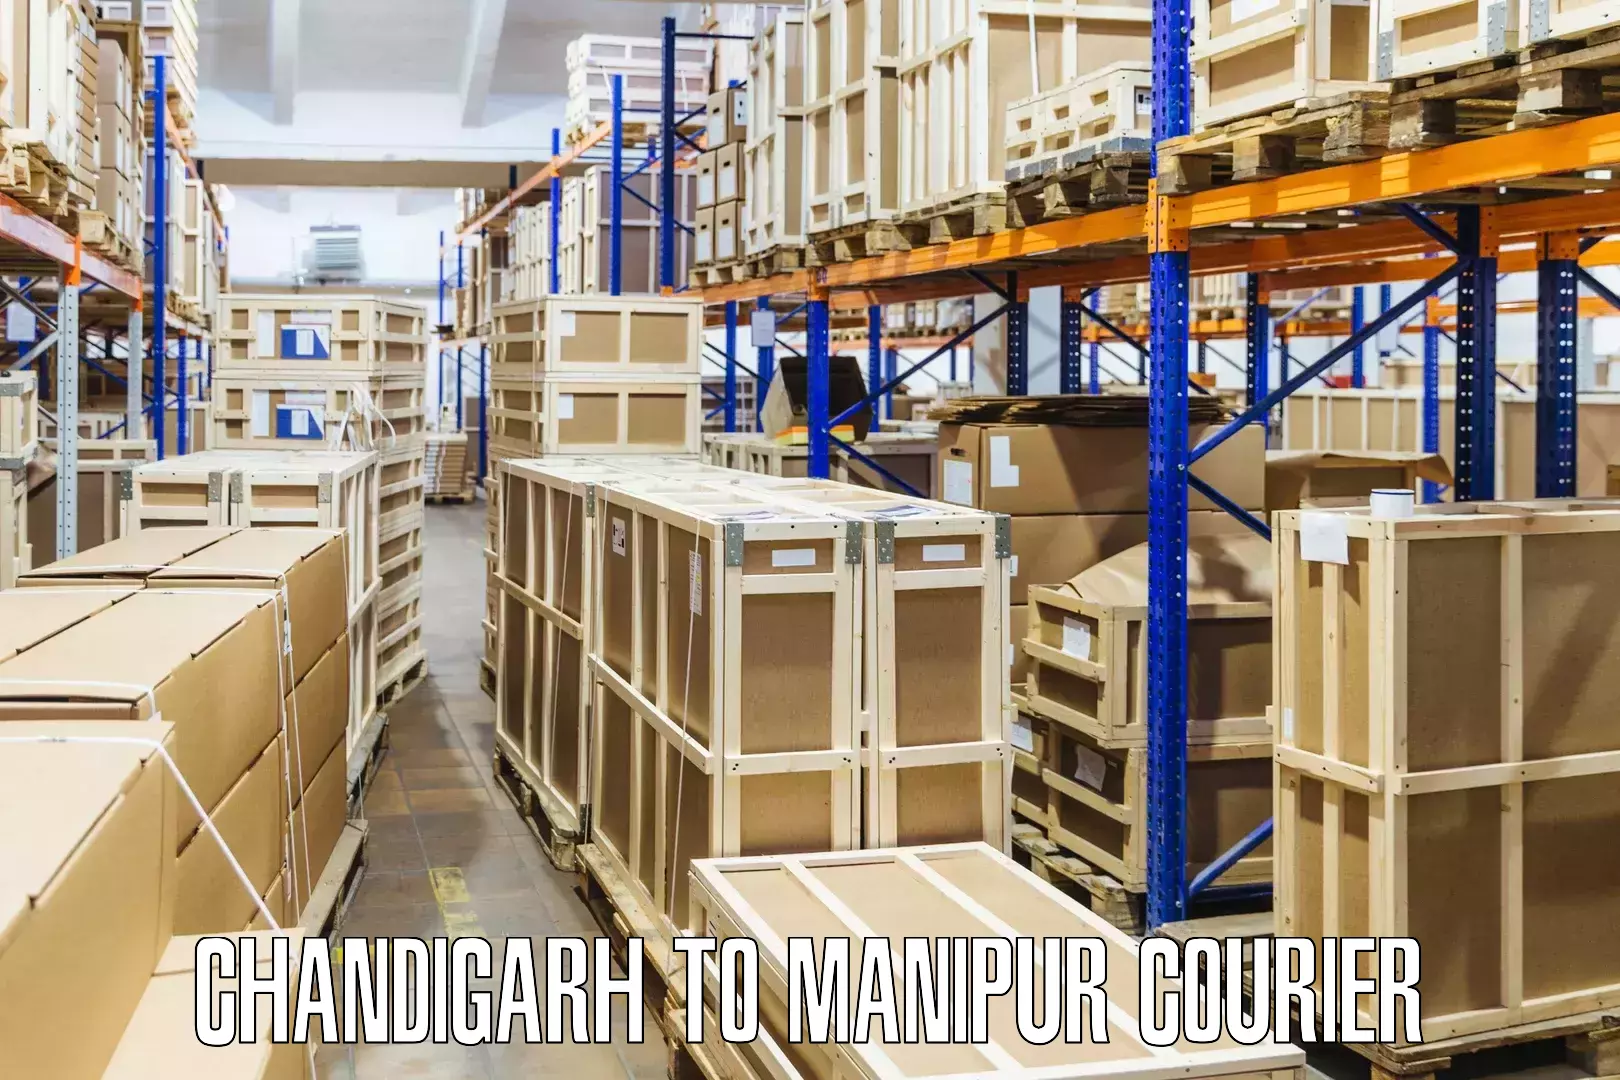 Modern parcel services Chandigarh to Manipur